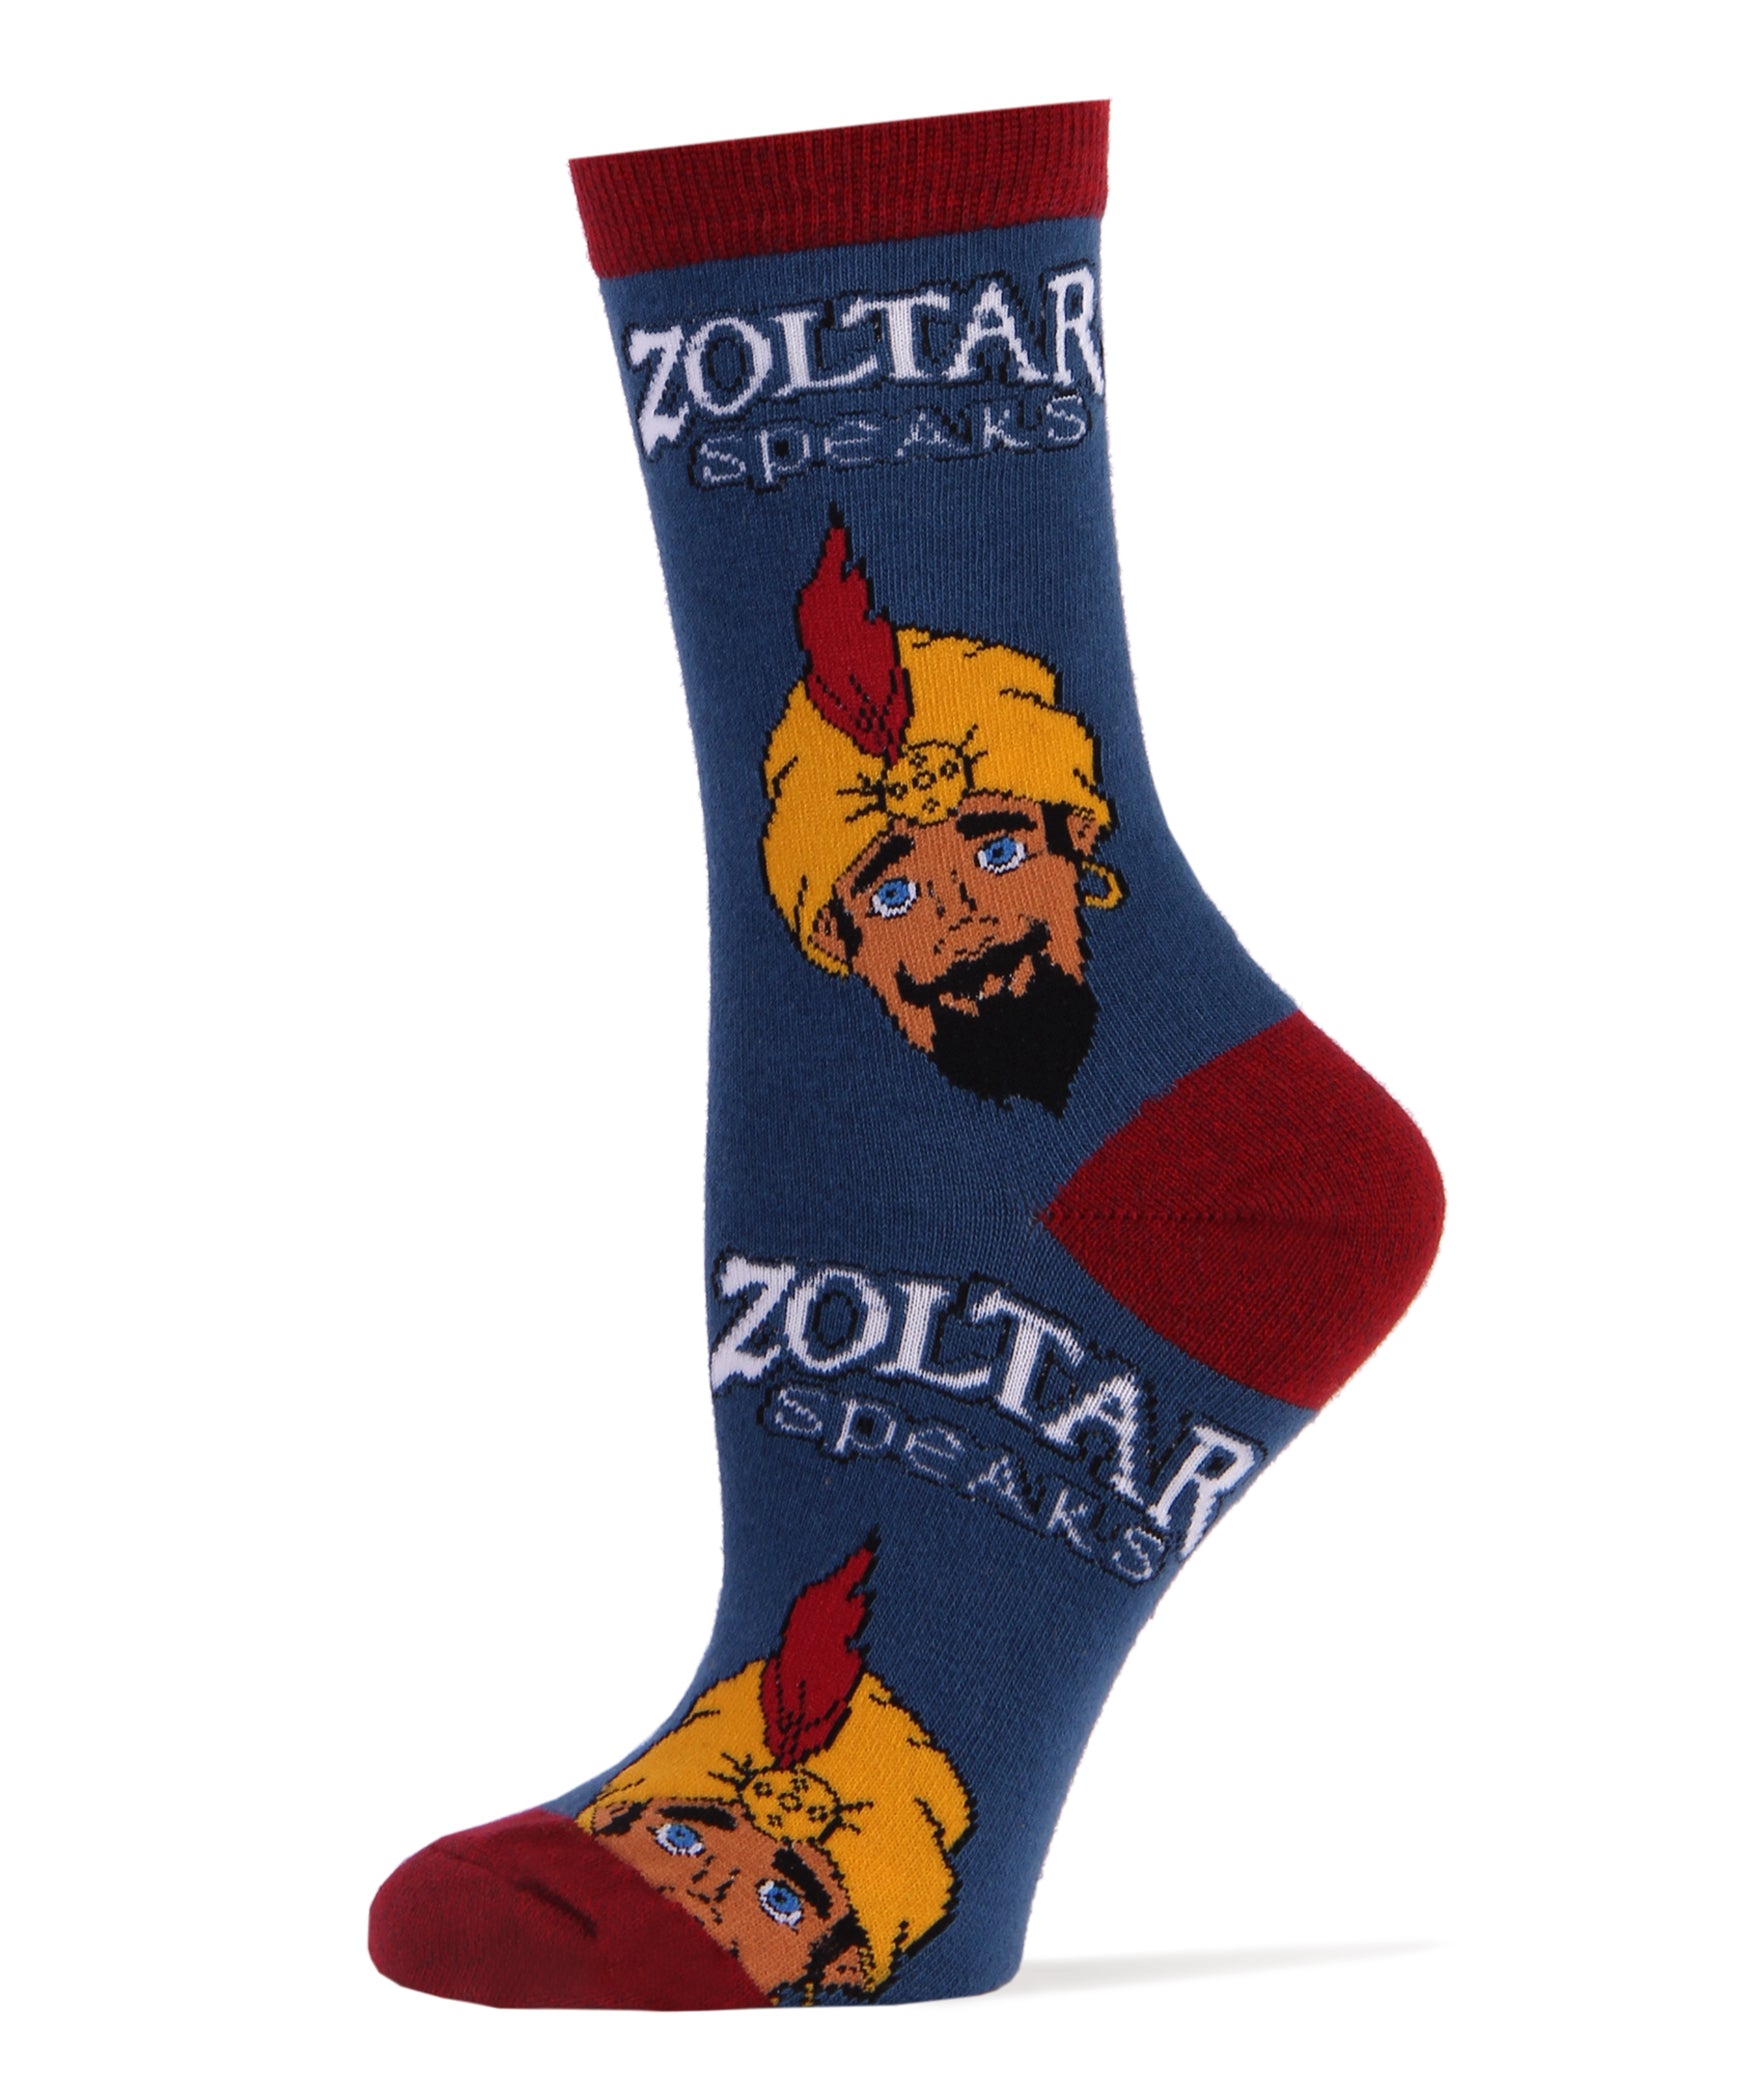 Zoltar Speaks Again Socks | Novelty Socks For Women